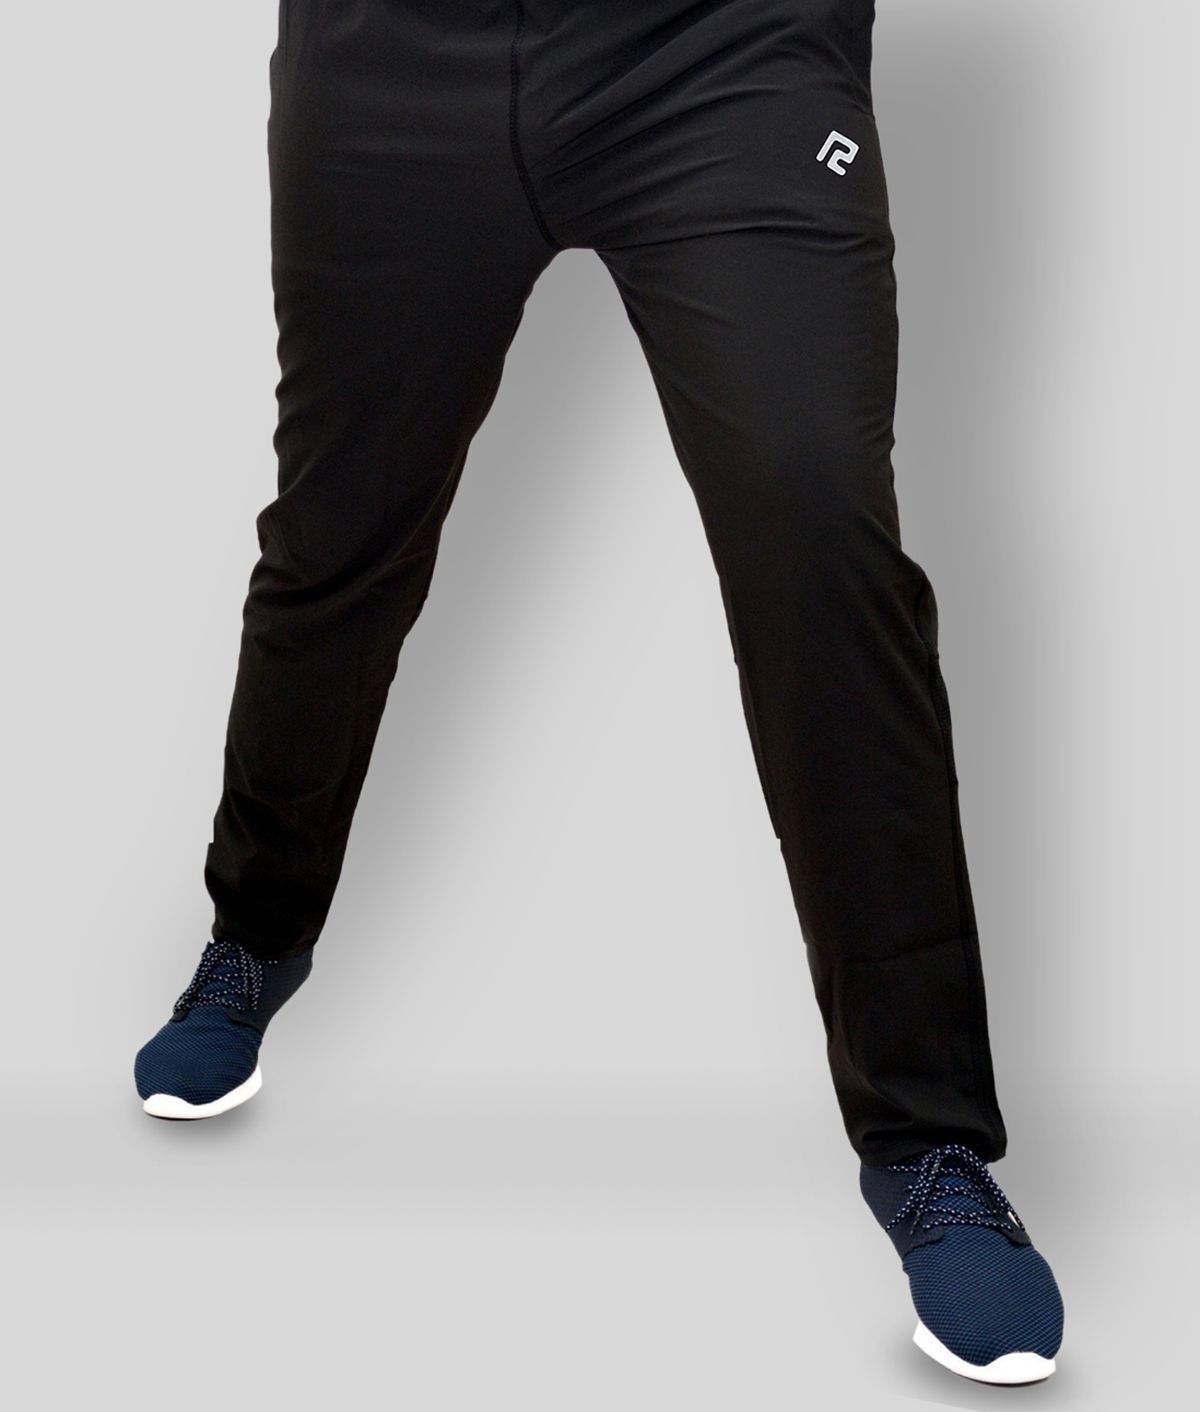 RANBOLT - Black Polyester Men's Trackpants ( Pack of 1 )